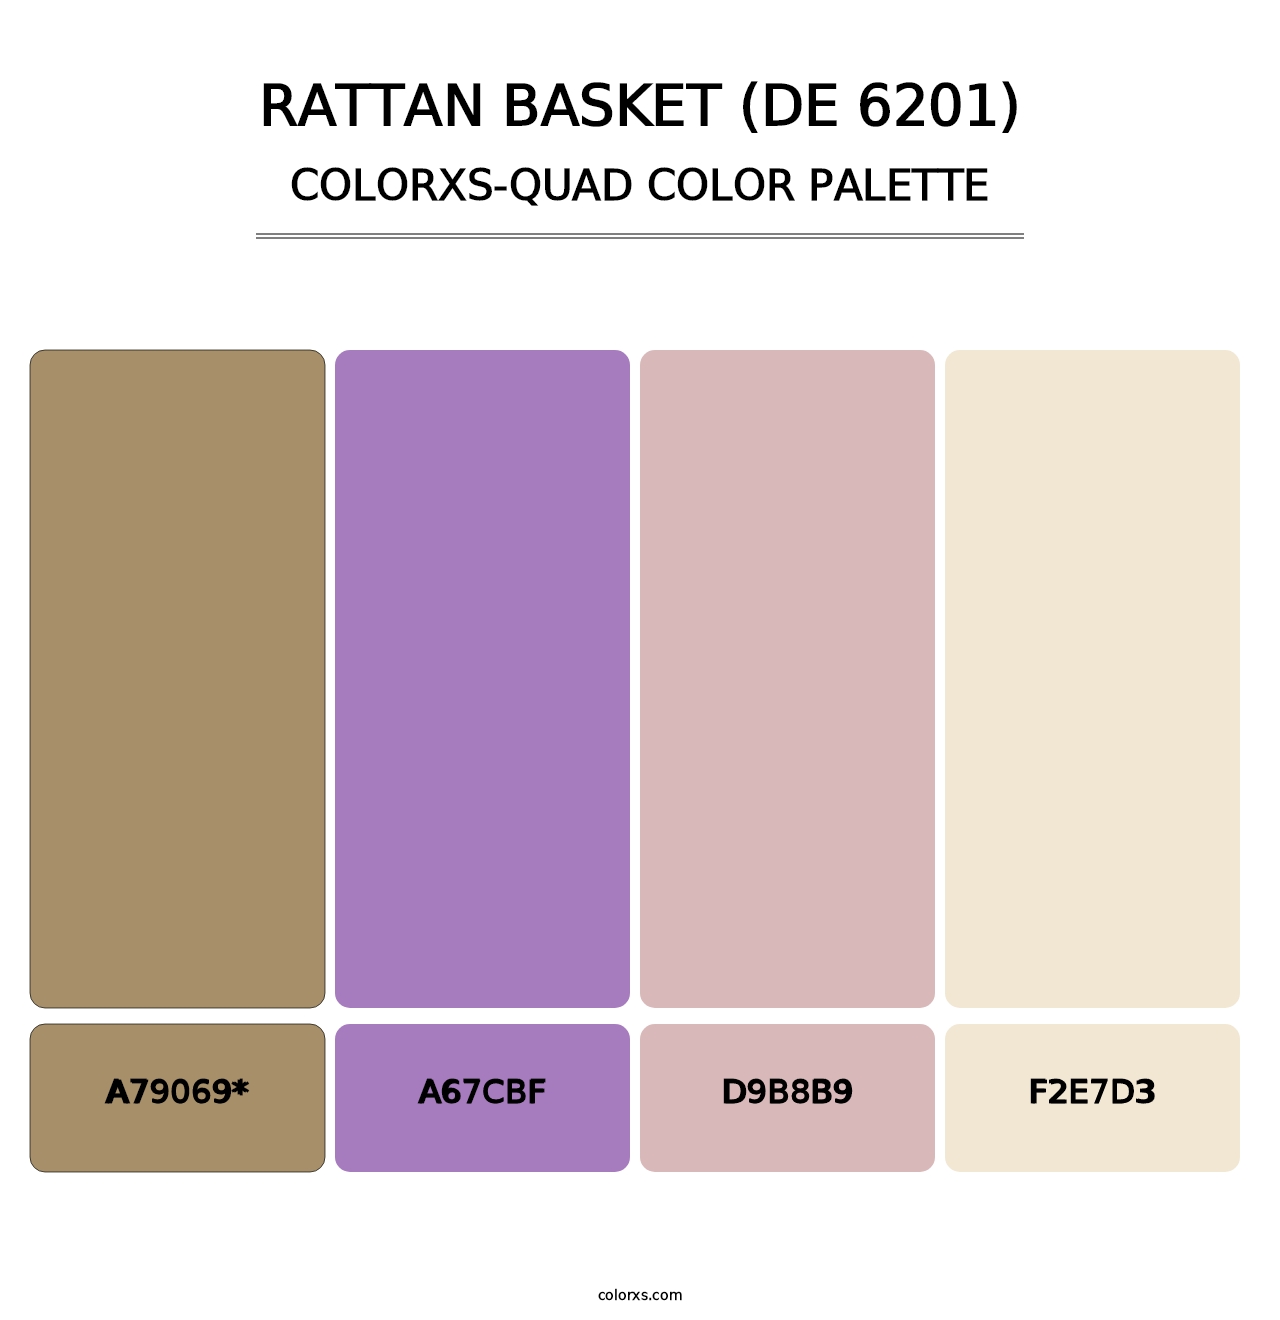 Rattan Basket (DE 6201) - Colorxs Quad Palette